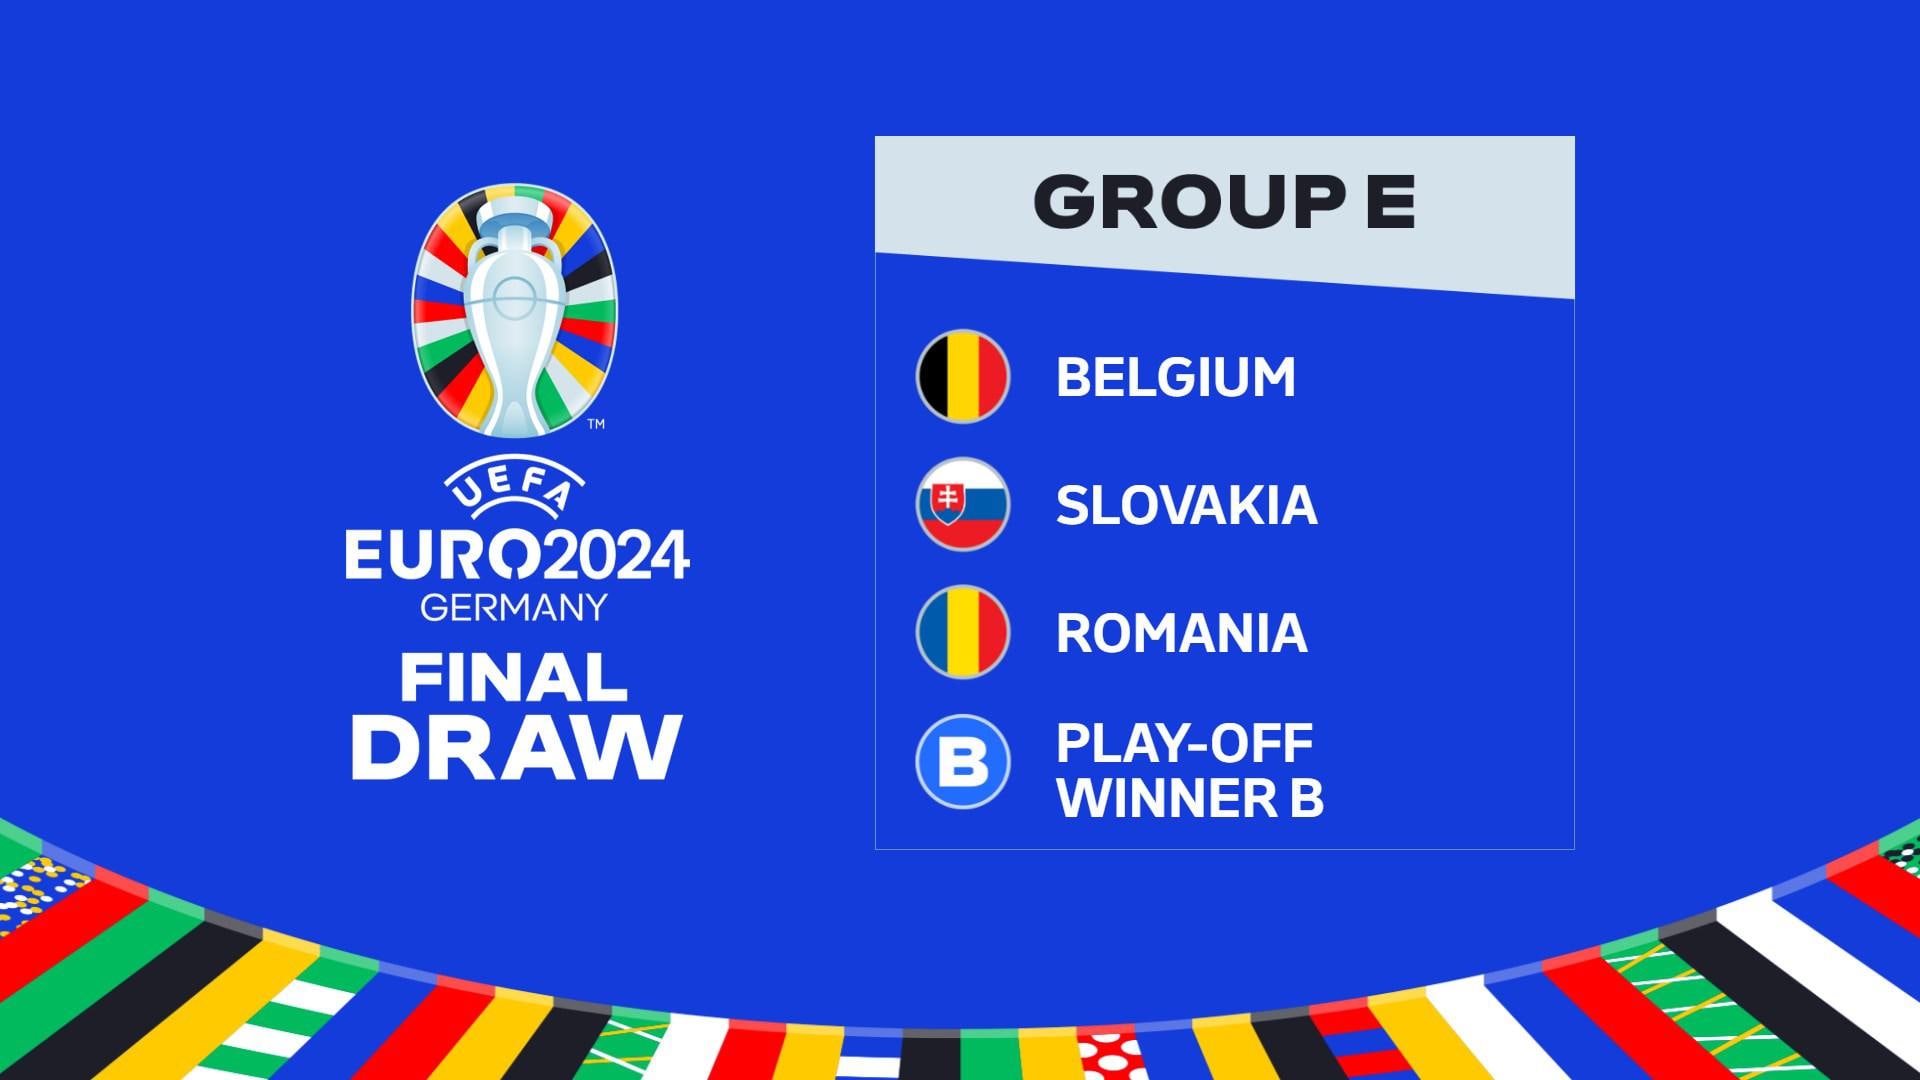 UEFA EURO 2024 Grupa E: Belgia, Slovacia, România, câștigătoarea play-off-ului B |  UEFA Euro 2024